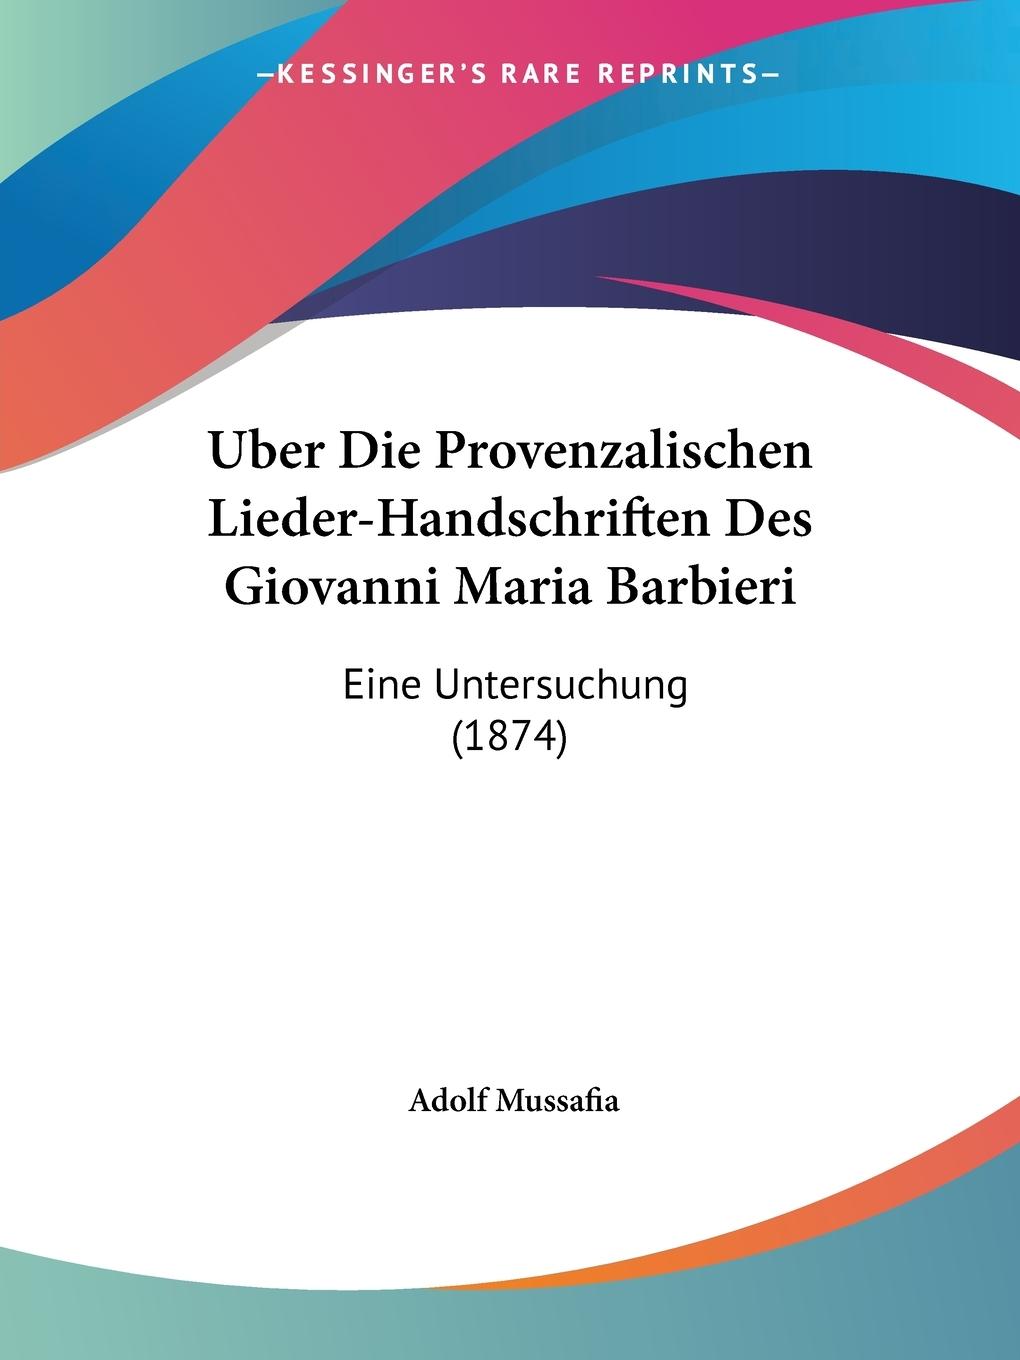 Uber Die Provenzalischen Lieder-Handschriften Des Giovanni Maria Barbieri - Mussafia, Adolf